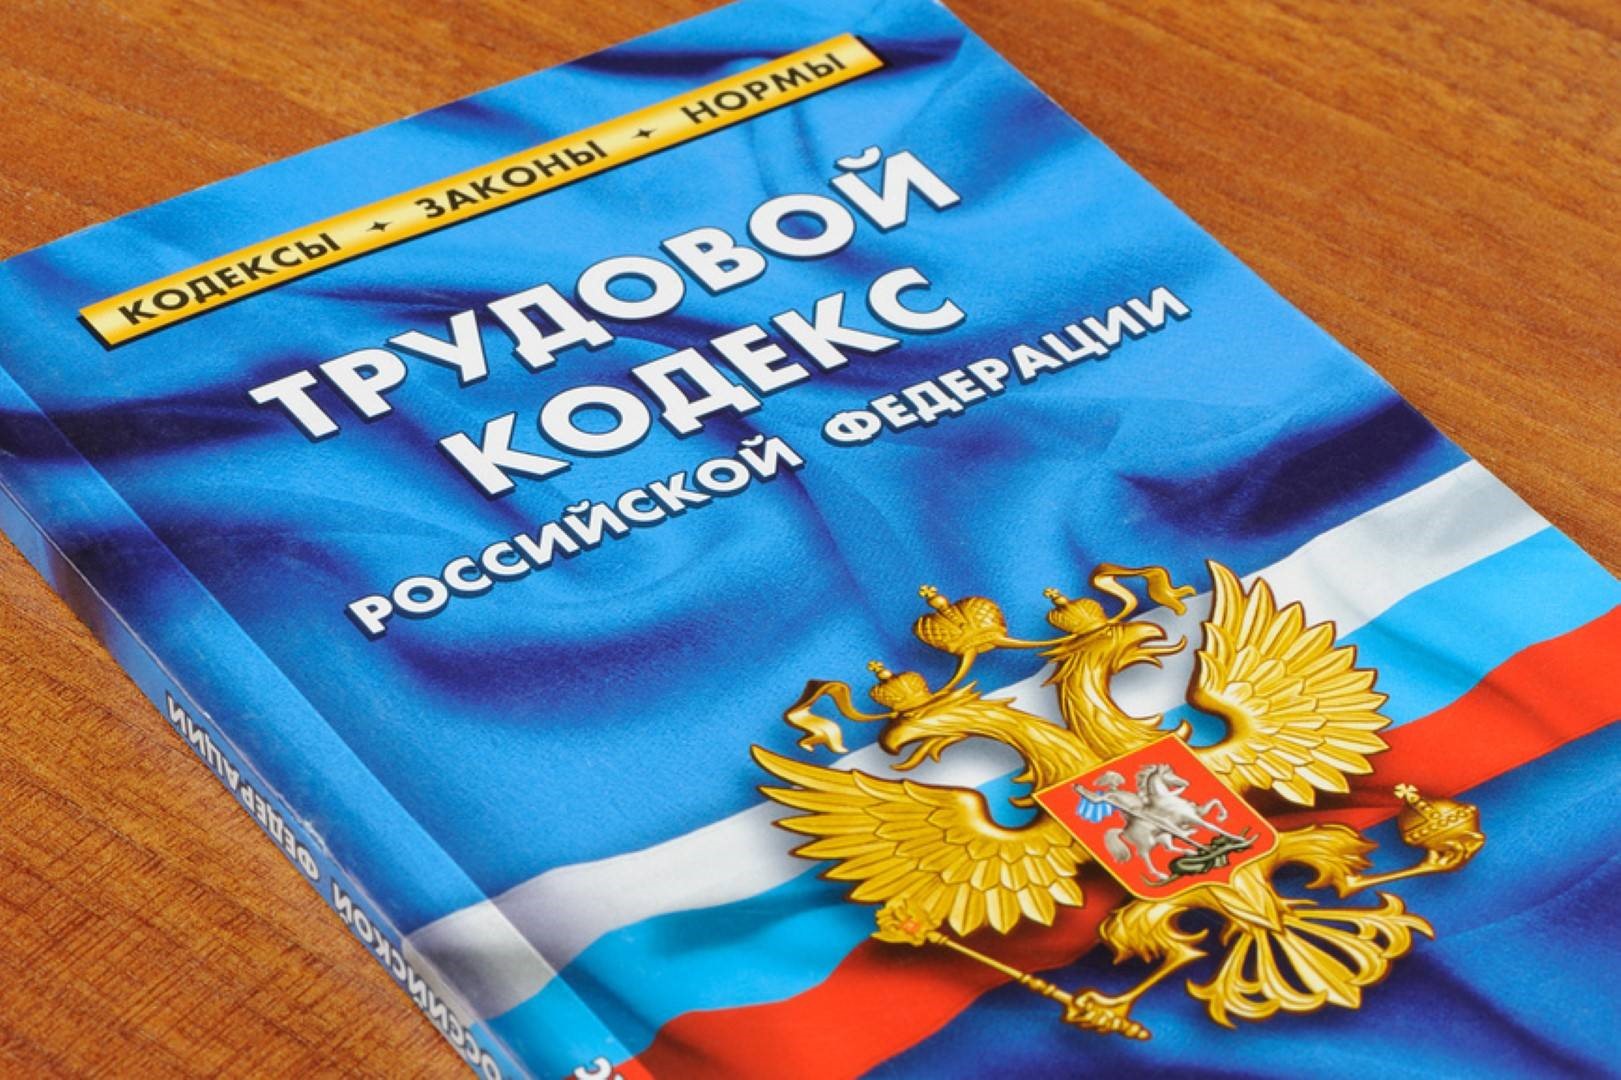 Трудовой кодекс Российской Федерации книга 2020